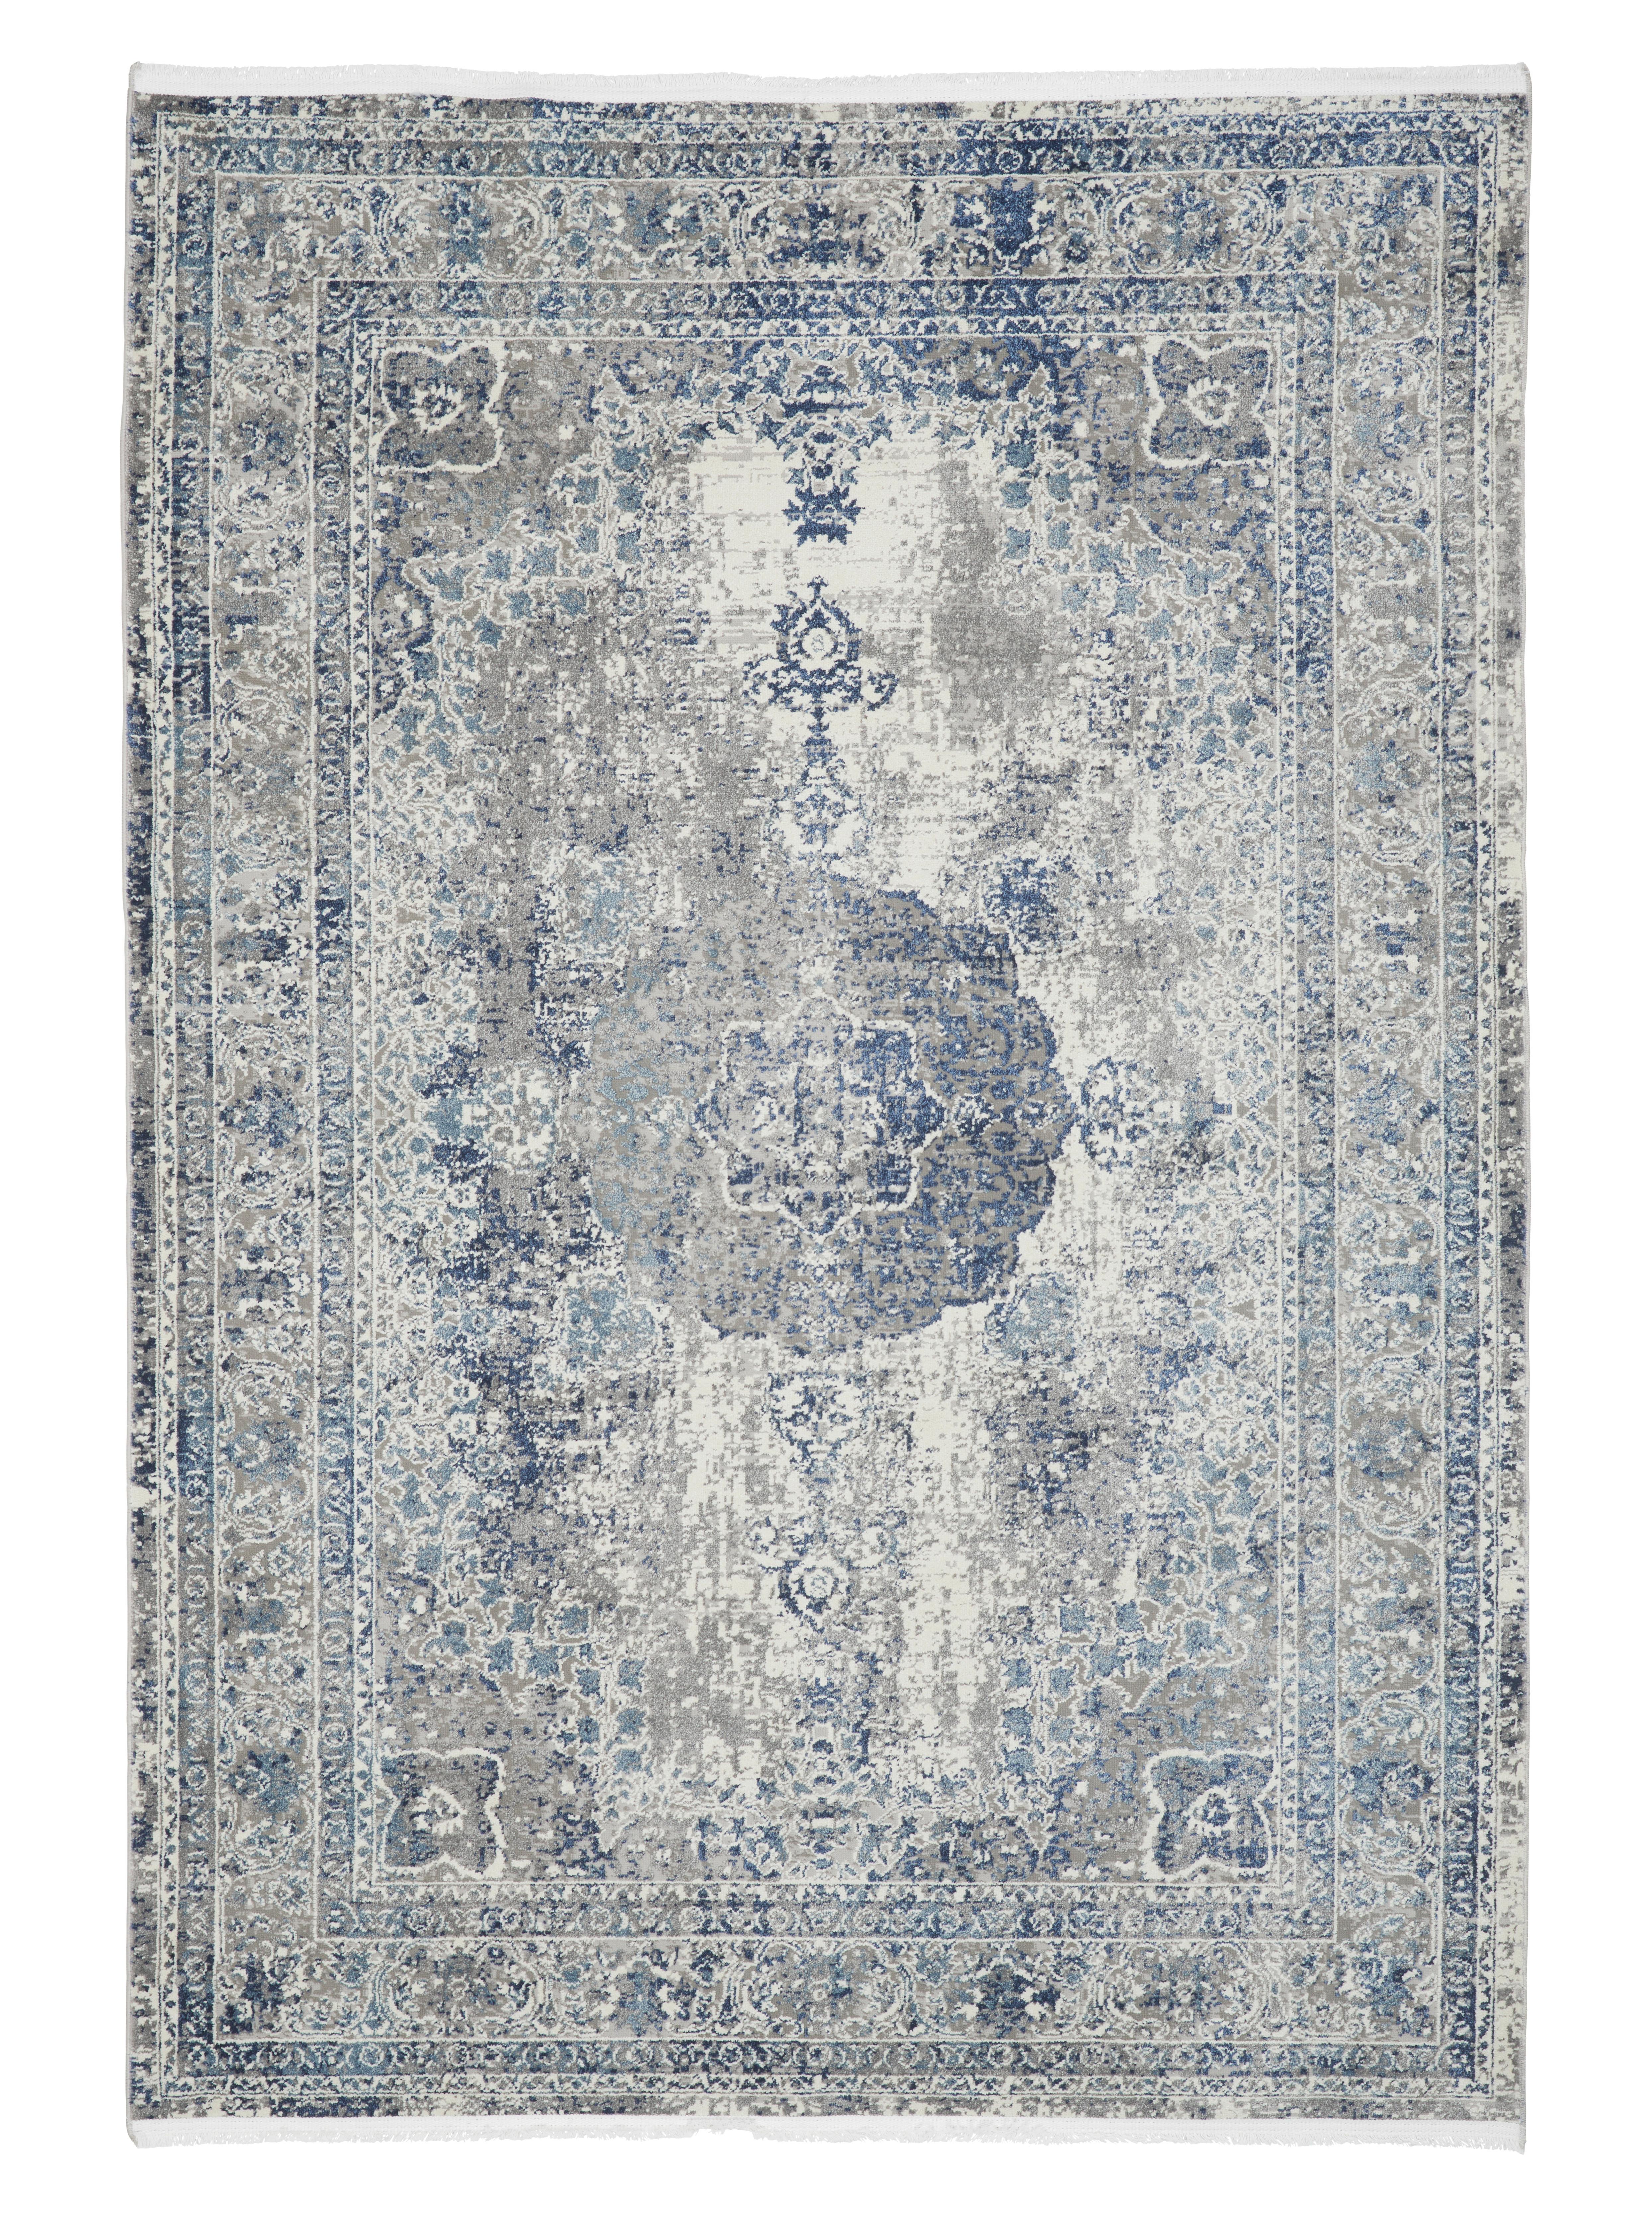 Tkaný Koberec Marcus 3, 160/230cm - krémová/světle modrá, textil (160/230cm) - Modern Living